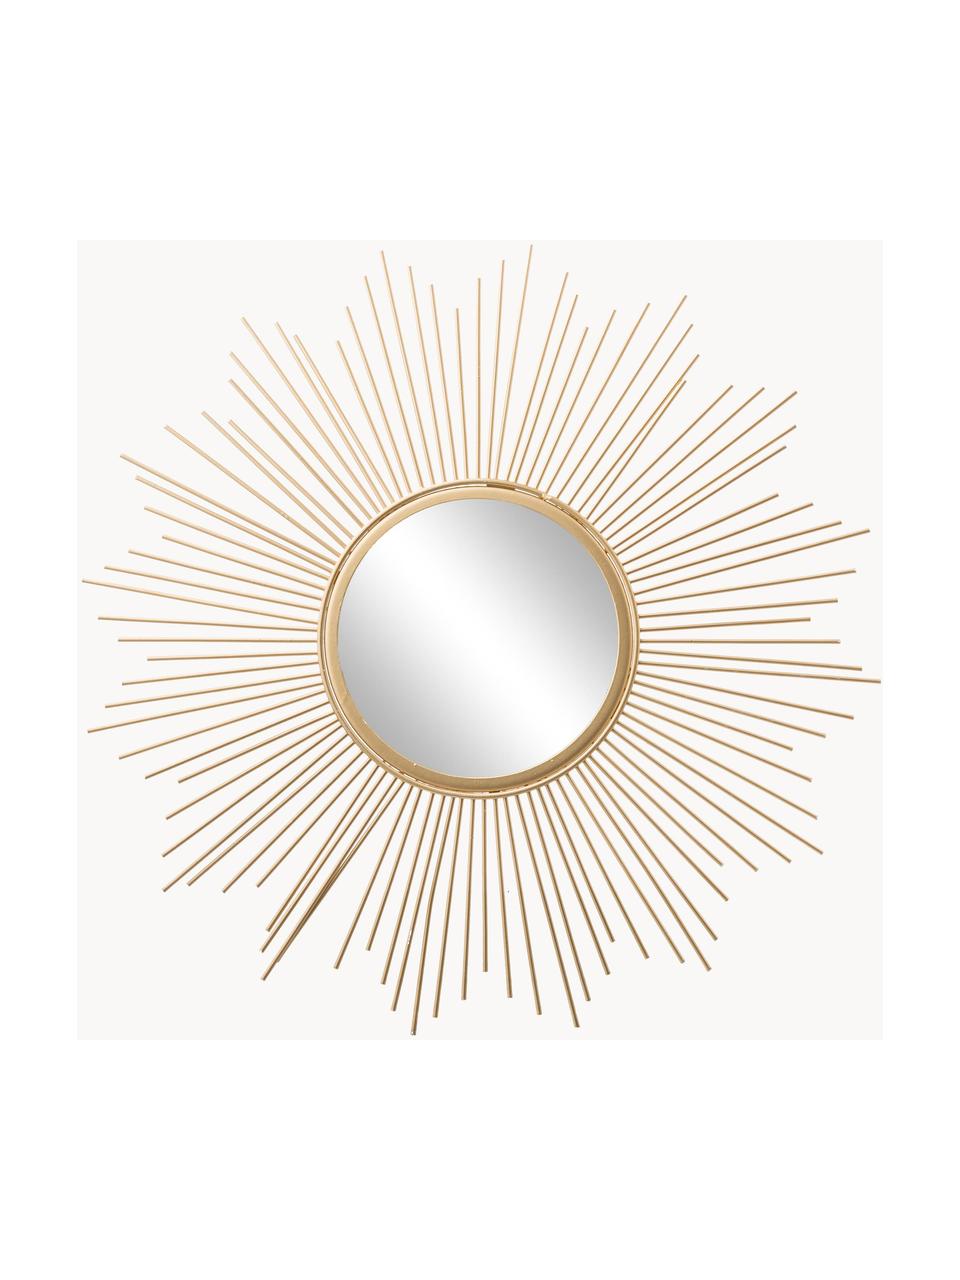 Dekospiegel Brooklyn, Rahmen: Metall, beschichtet, Spiegelfläche: Spiegelglas, Goldfarben, Ø 50 x T 2 cm